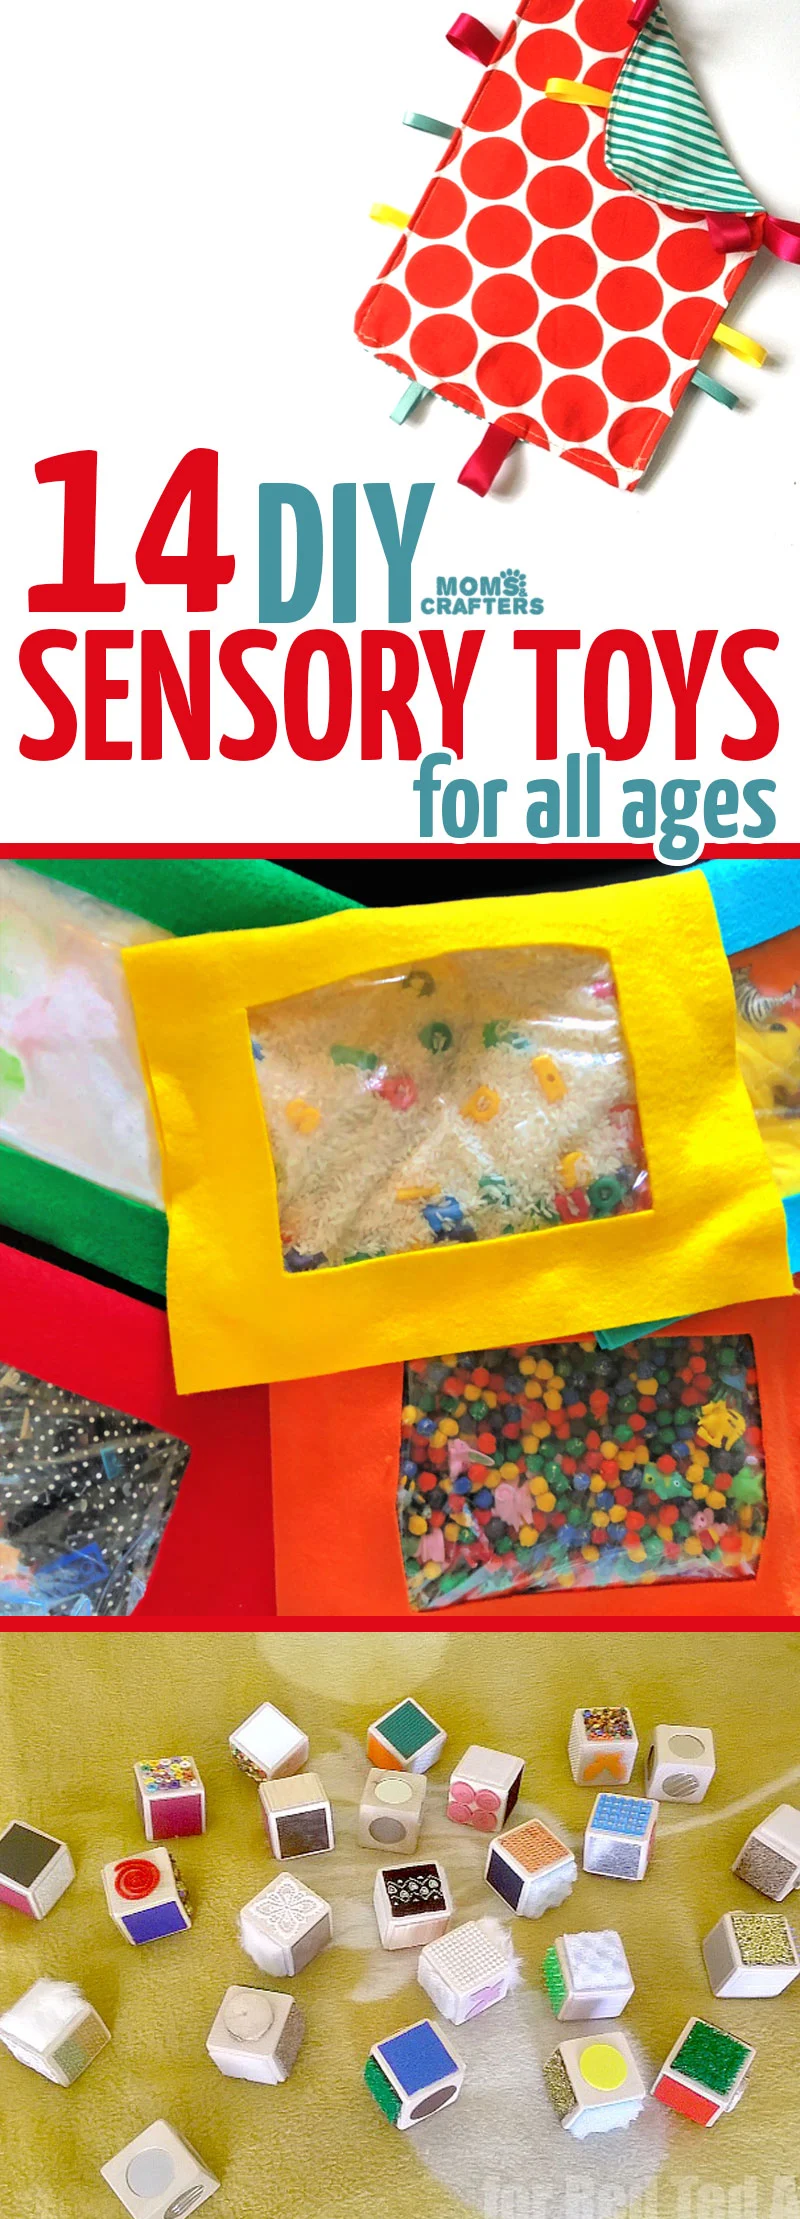 sensory toys for boys